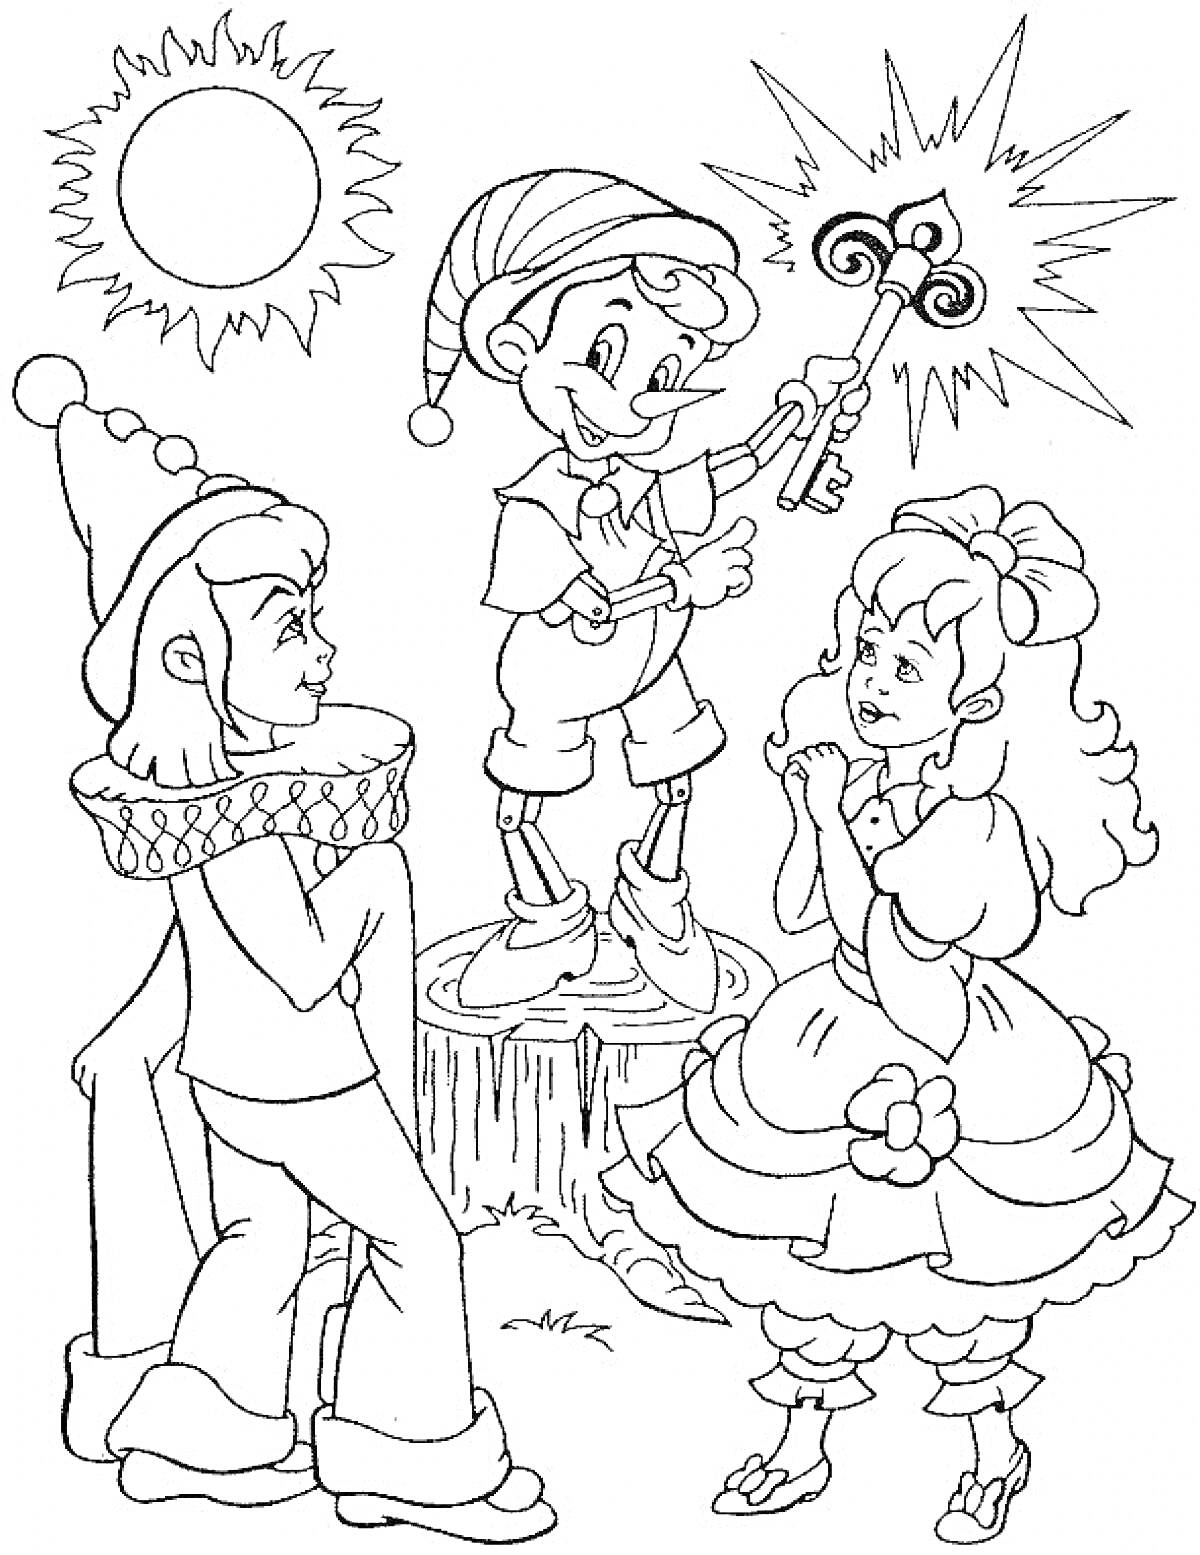 Раскраска Буратино с ключиком на пеньке, две девочки, солнце